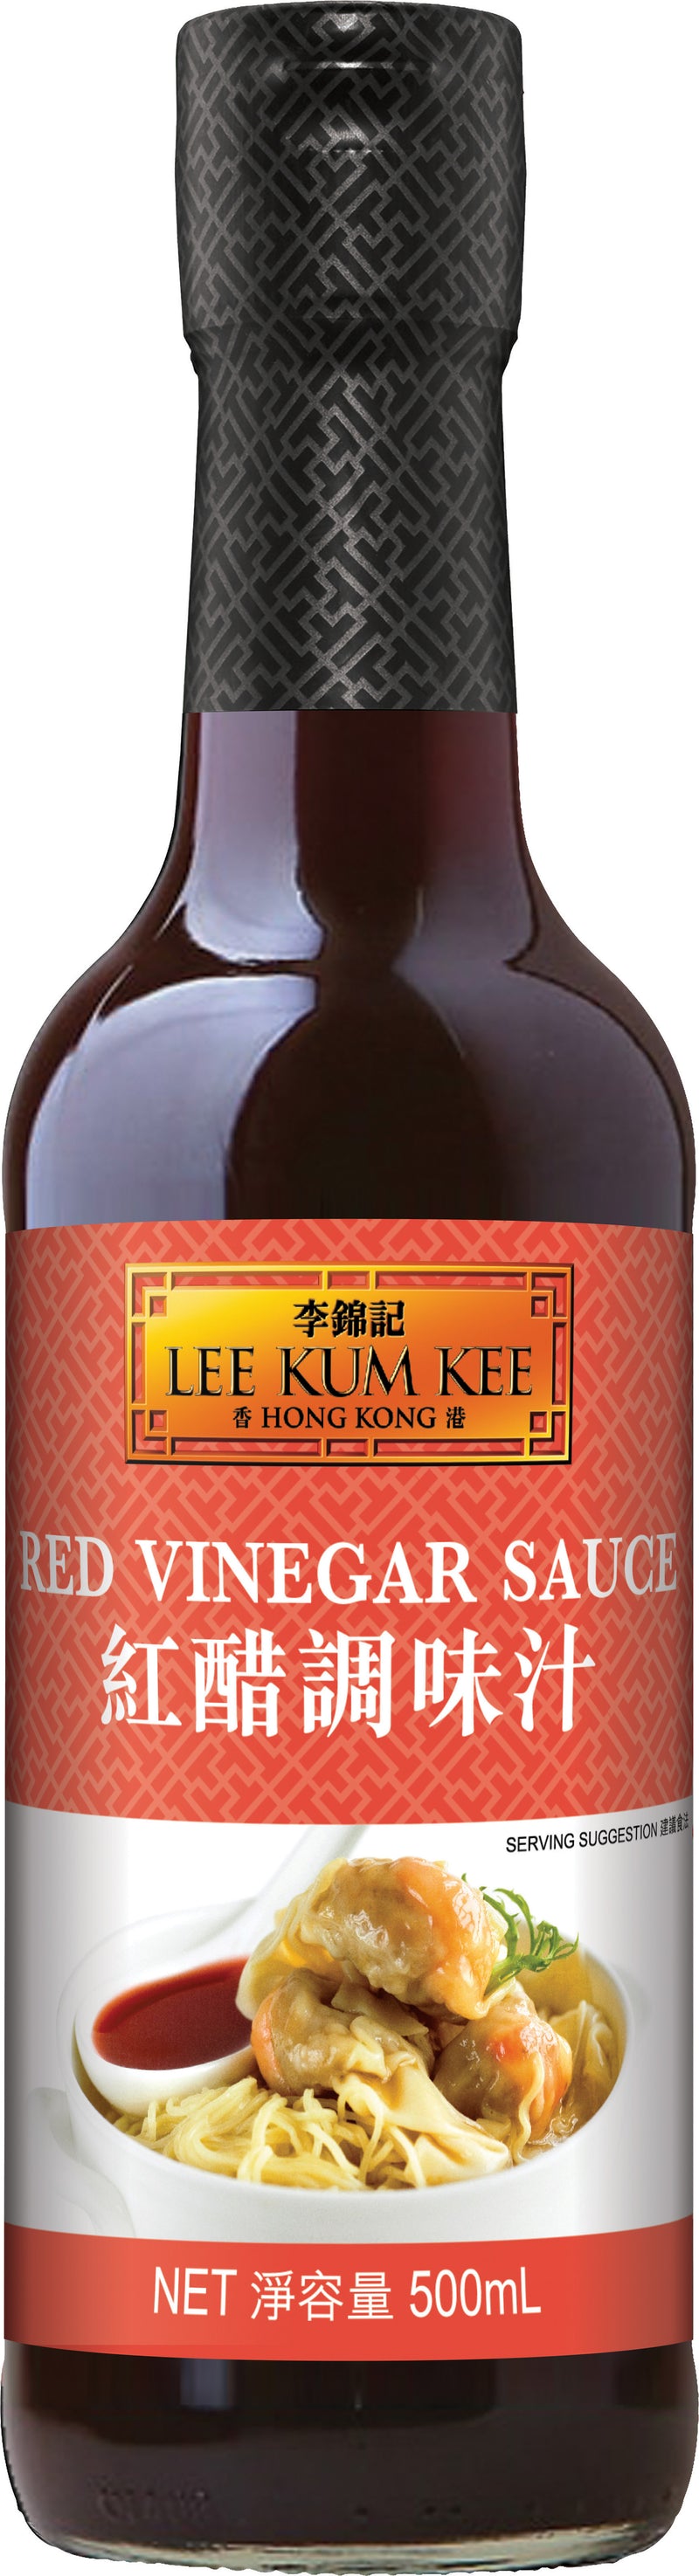 Red Vinegar Sauce 500ml Lee Kum Kee